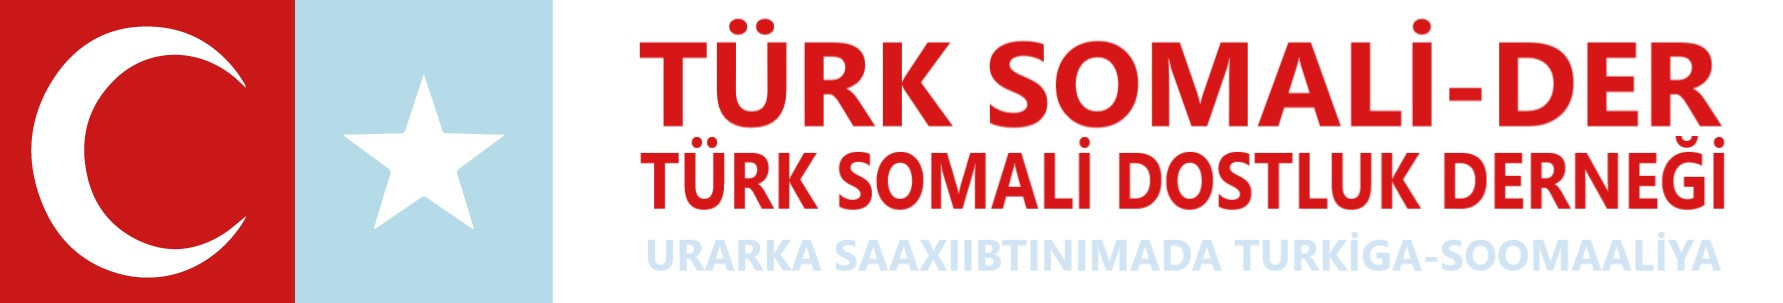 Türk Somali Dostluk Derneği